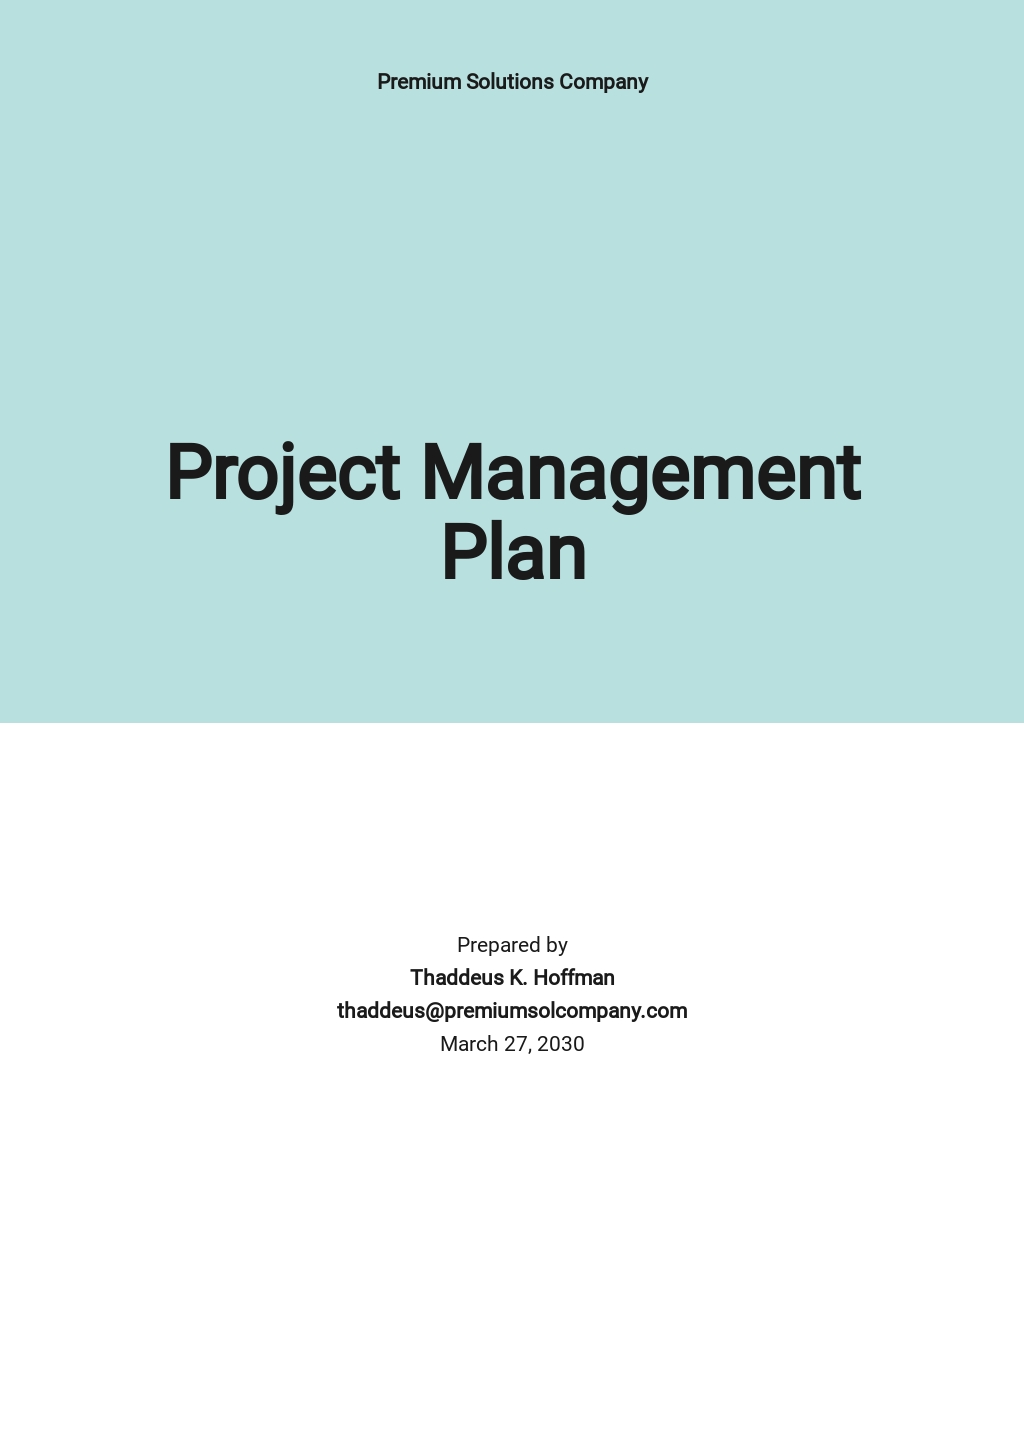 Construction Management Plans